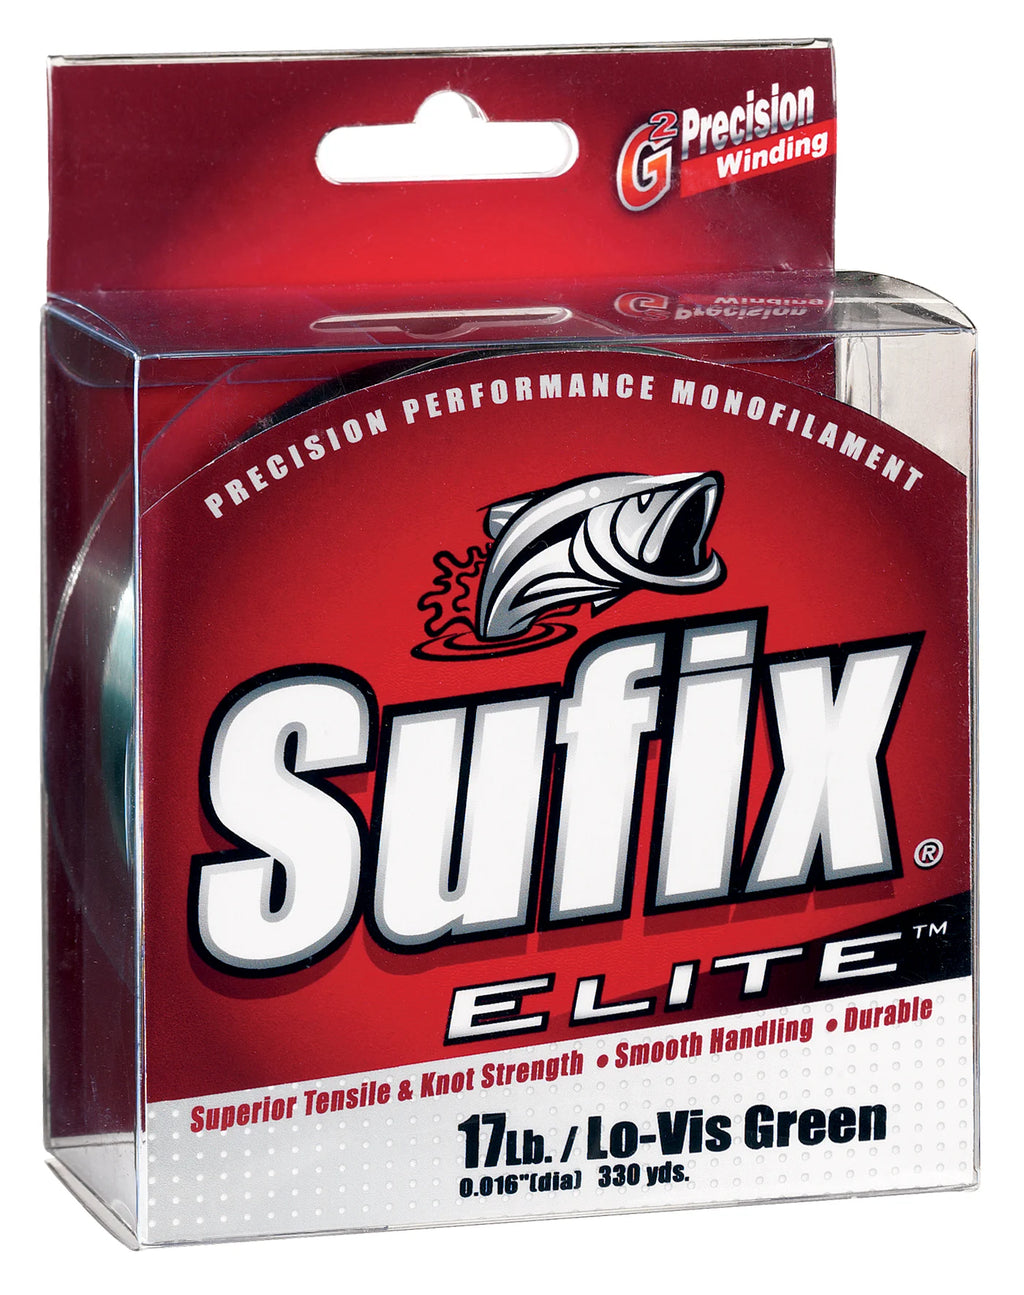 Sufix Elite Monofilament line, 100Mt / 110Yd, Low-Vis Green